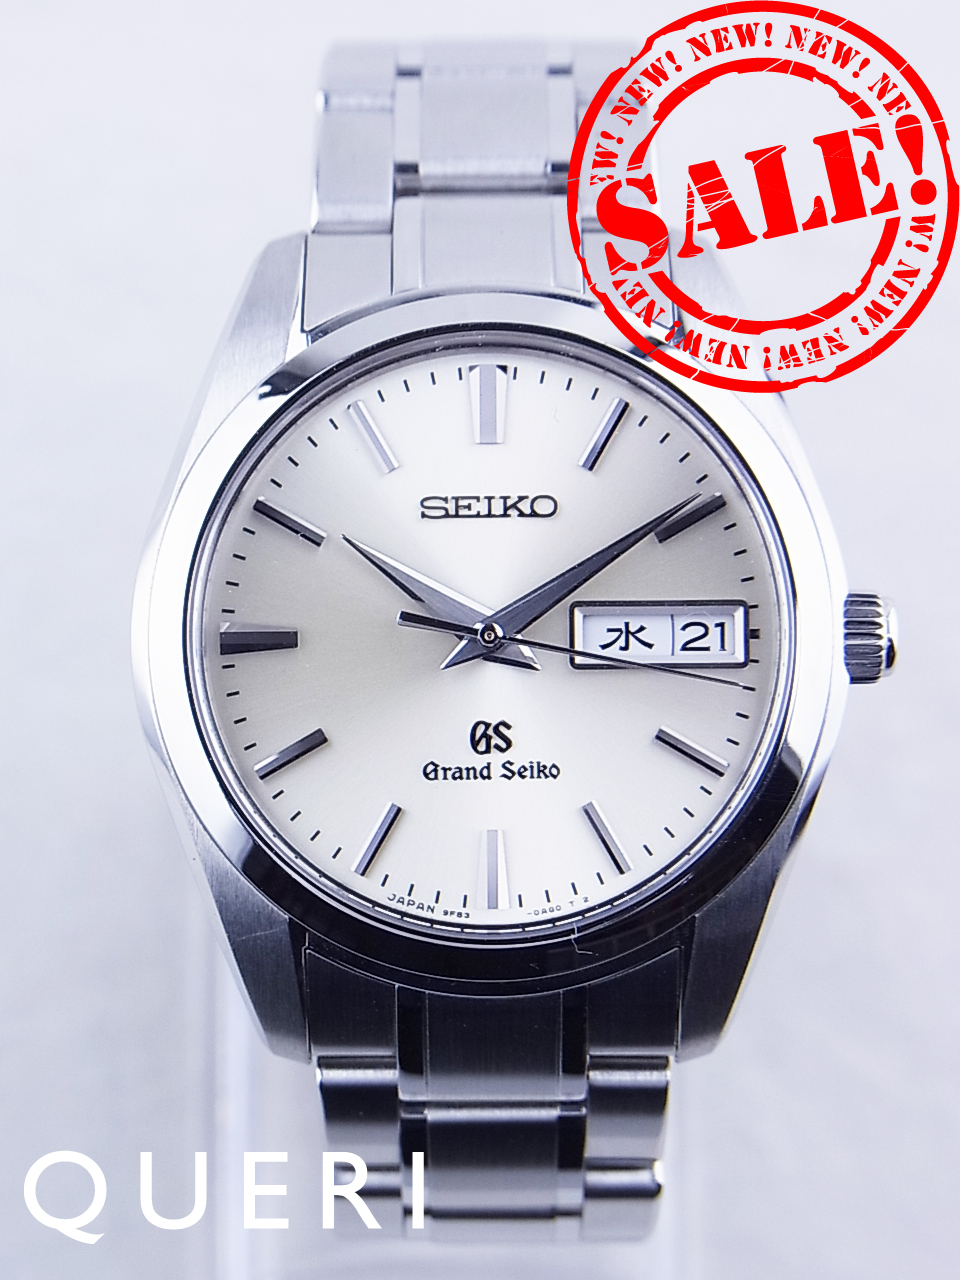 グランドセイコー9fクオーツsbgt035 9f 0ah0 を最安値価格で販売中 ブランド時計販売のクエリ